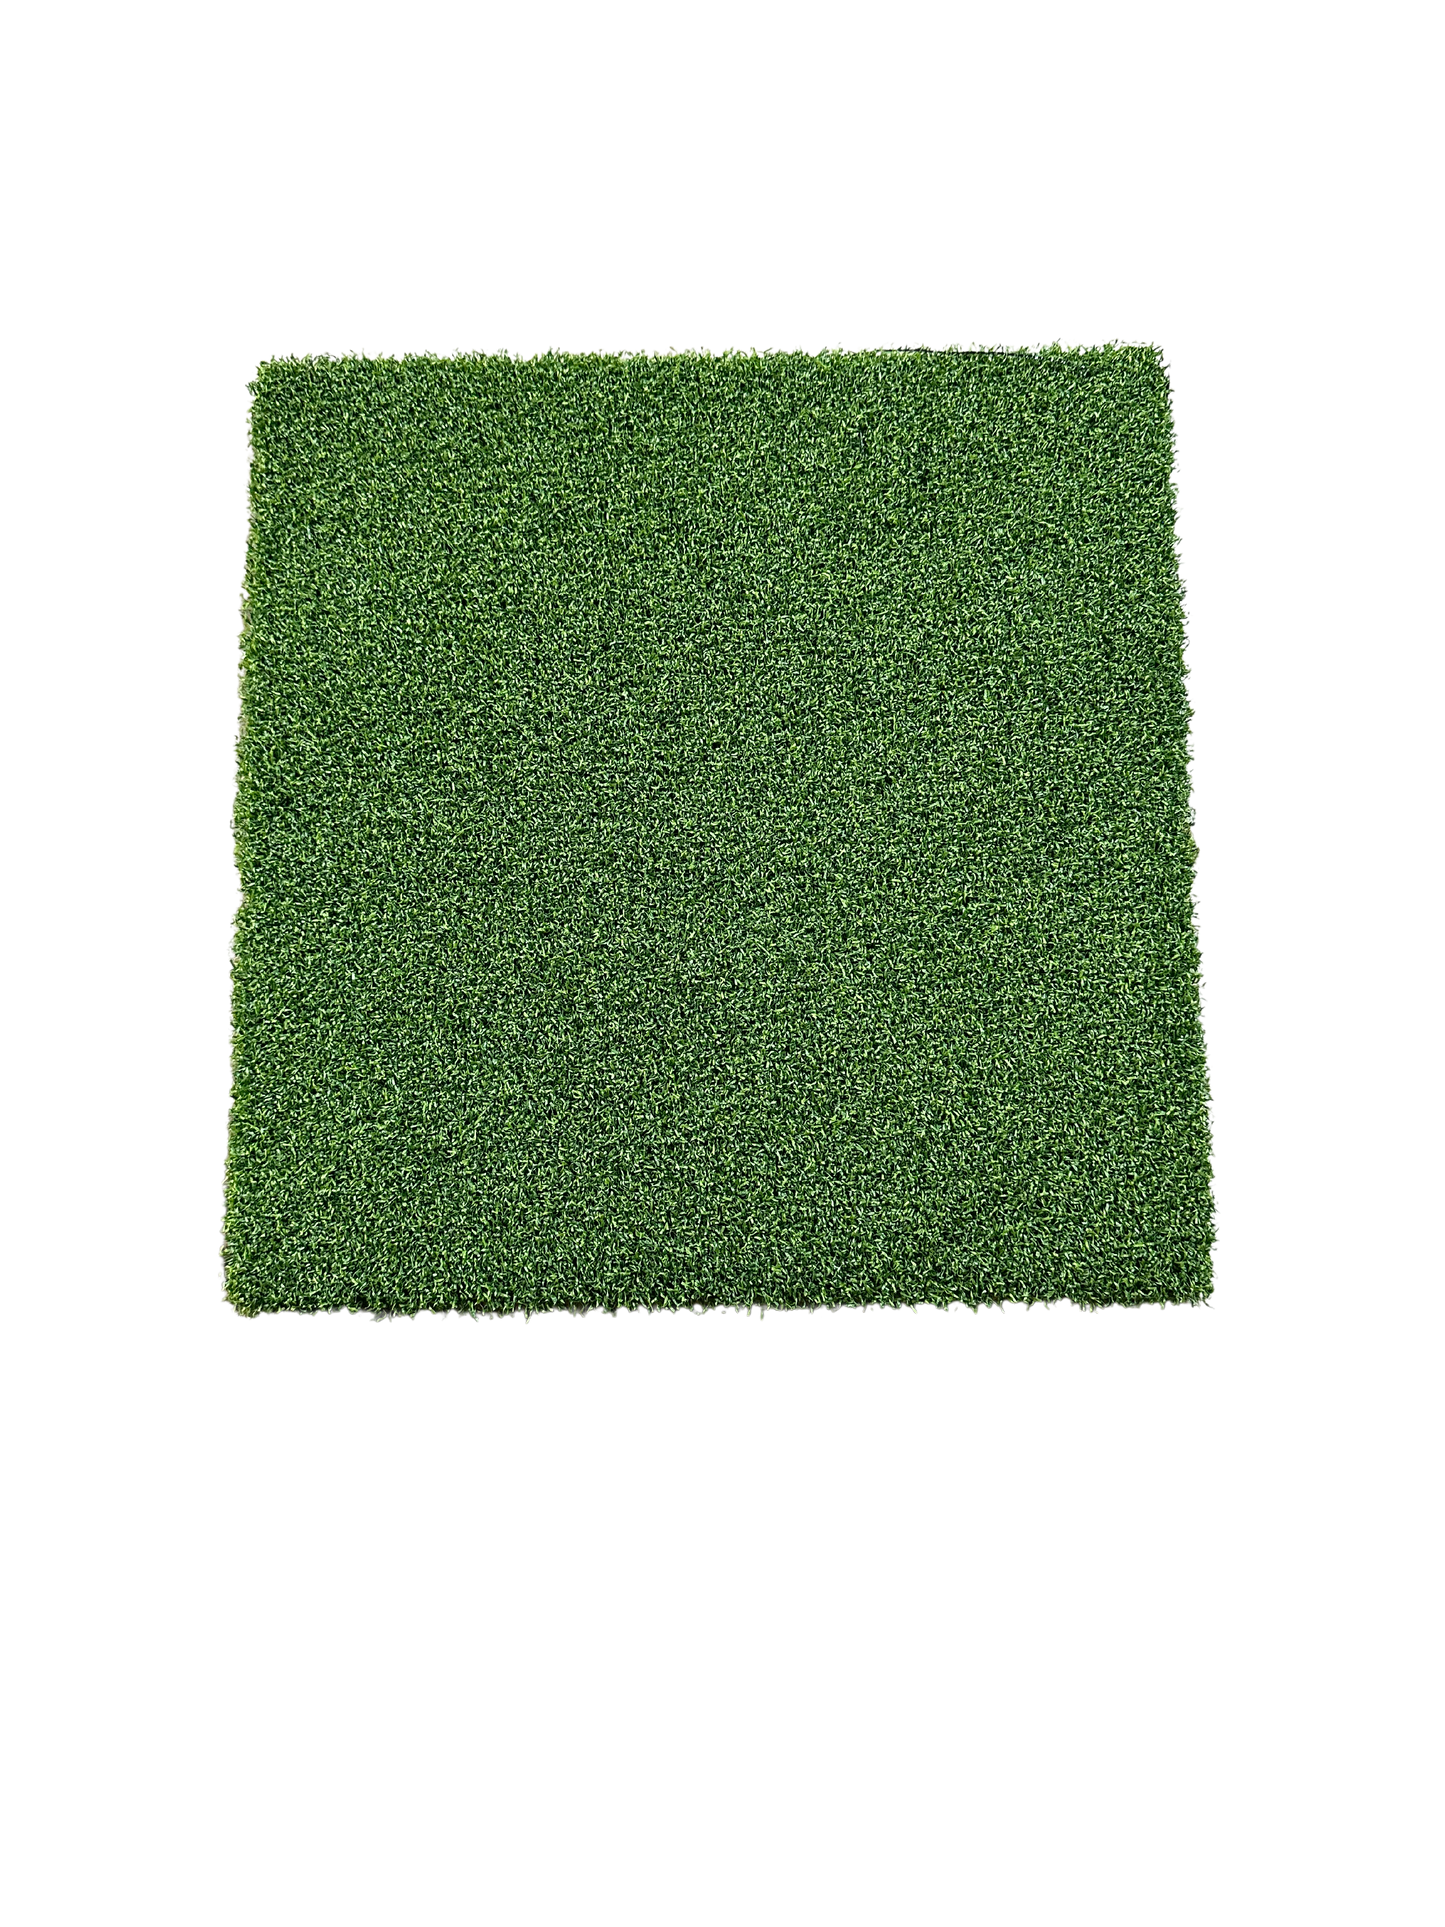 Golf Green Artificial Turf